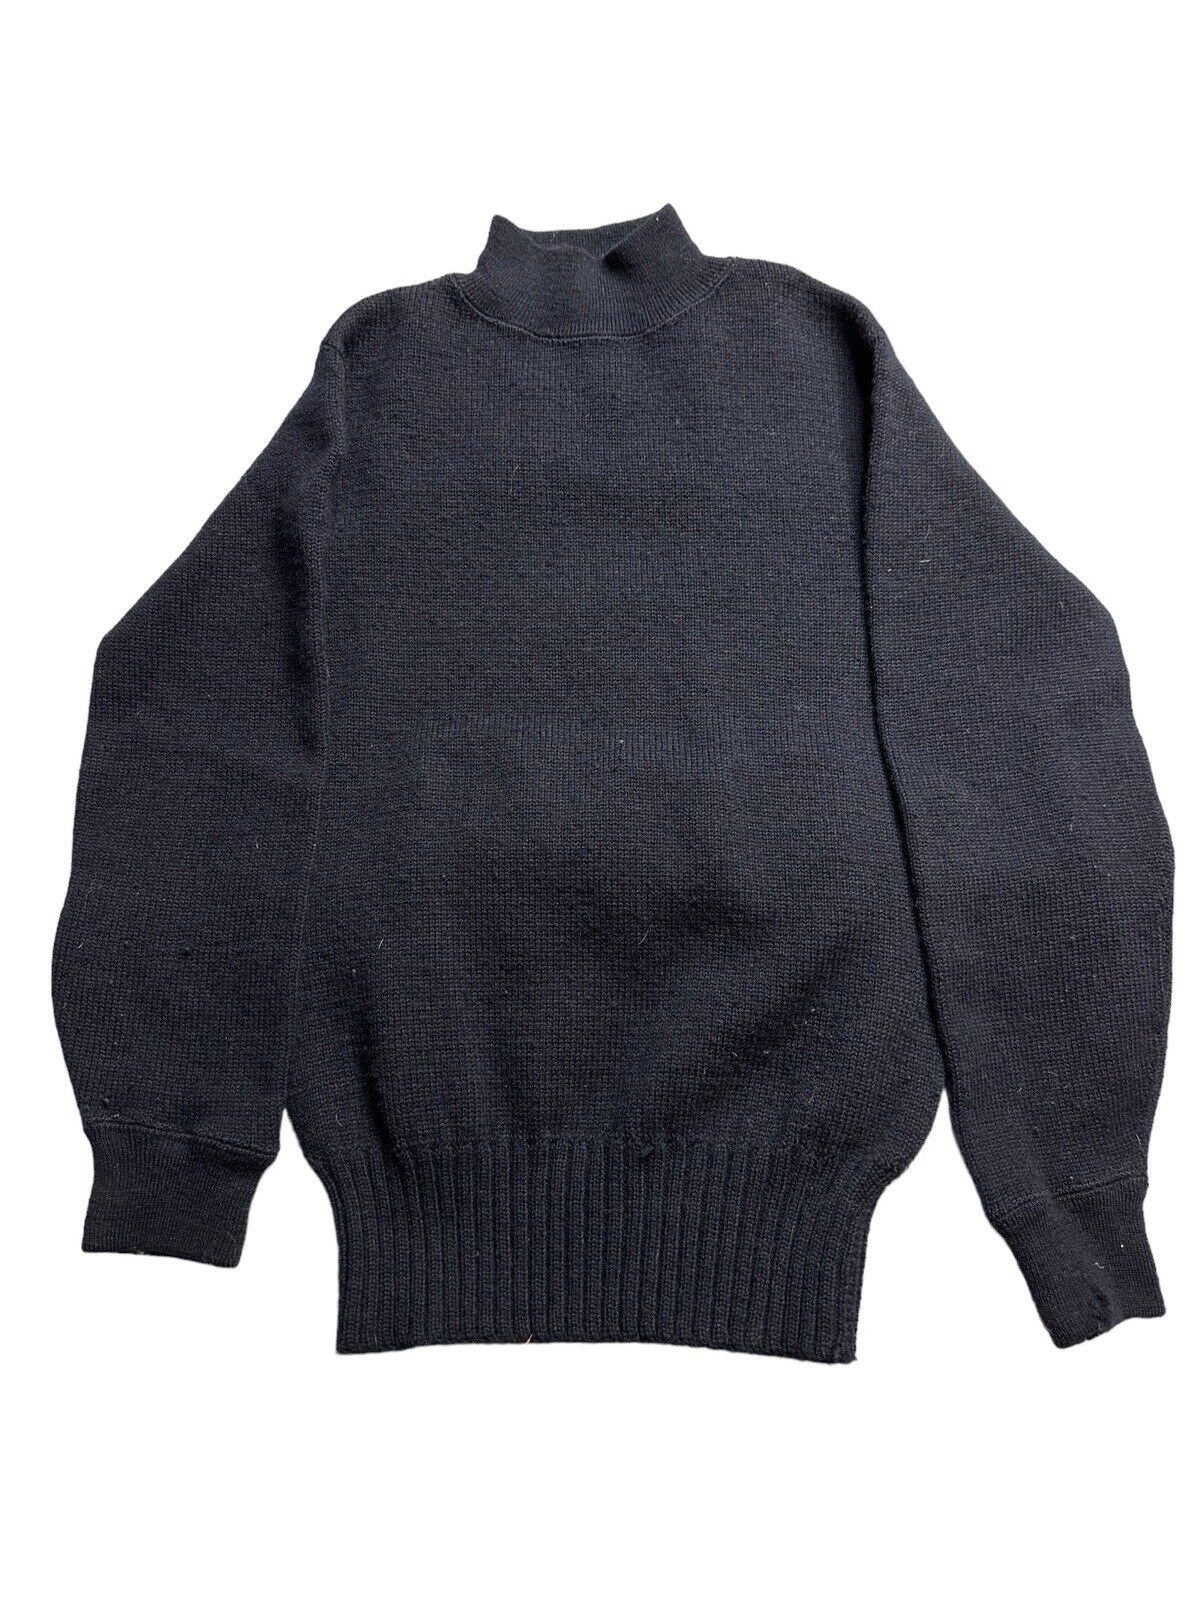 Vintage US Navy Mens Sweater Black Wool N140-62236s-38983B 40s 50s